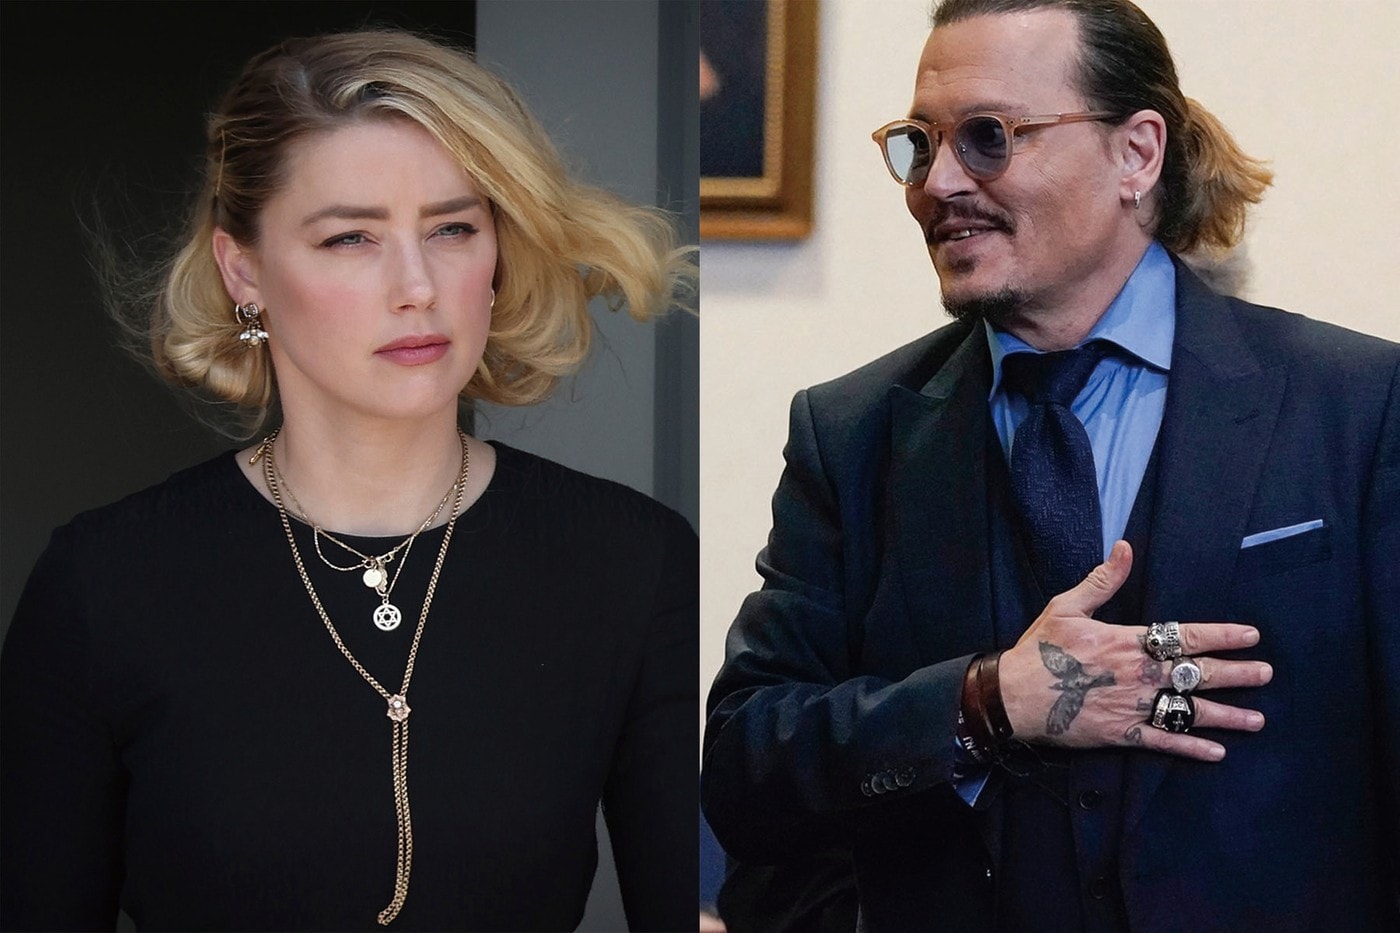 消息称 Johnny Depp 与 Amber Heard 世纪审判案将被改编翻拍为电影